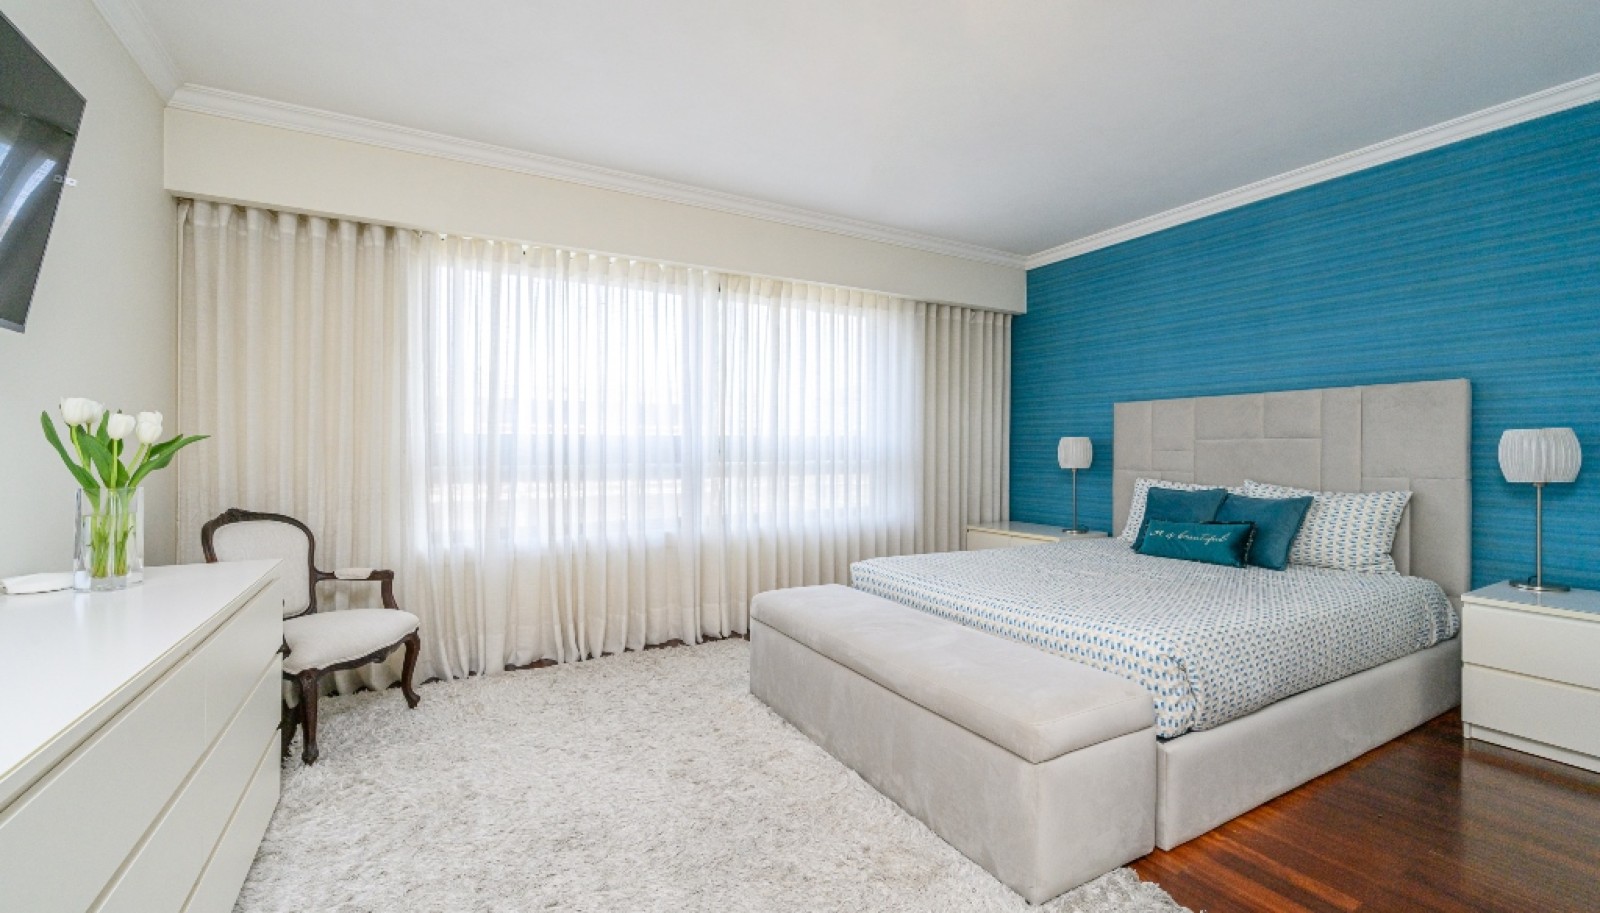 Appartement 3+1 chambres à vendre à Afurada, Vila Nova de Gaia, Portugal_251485